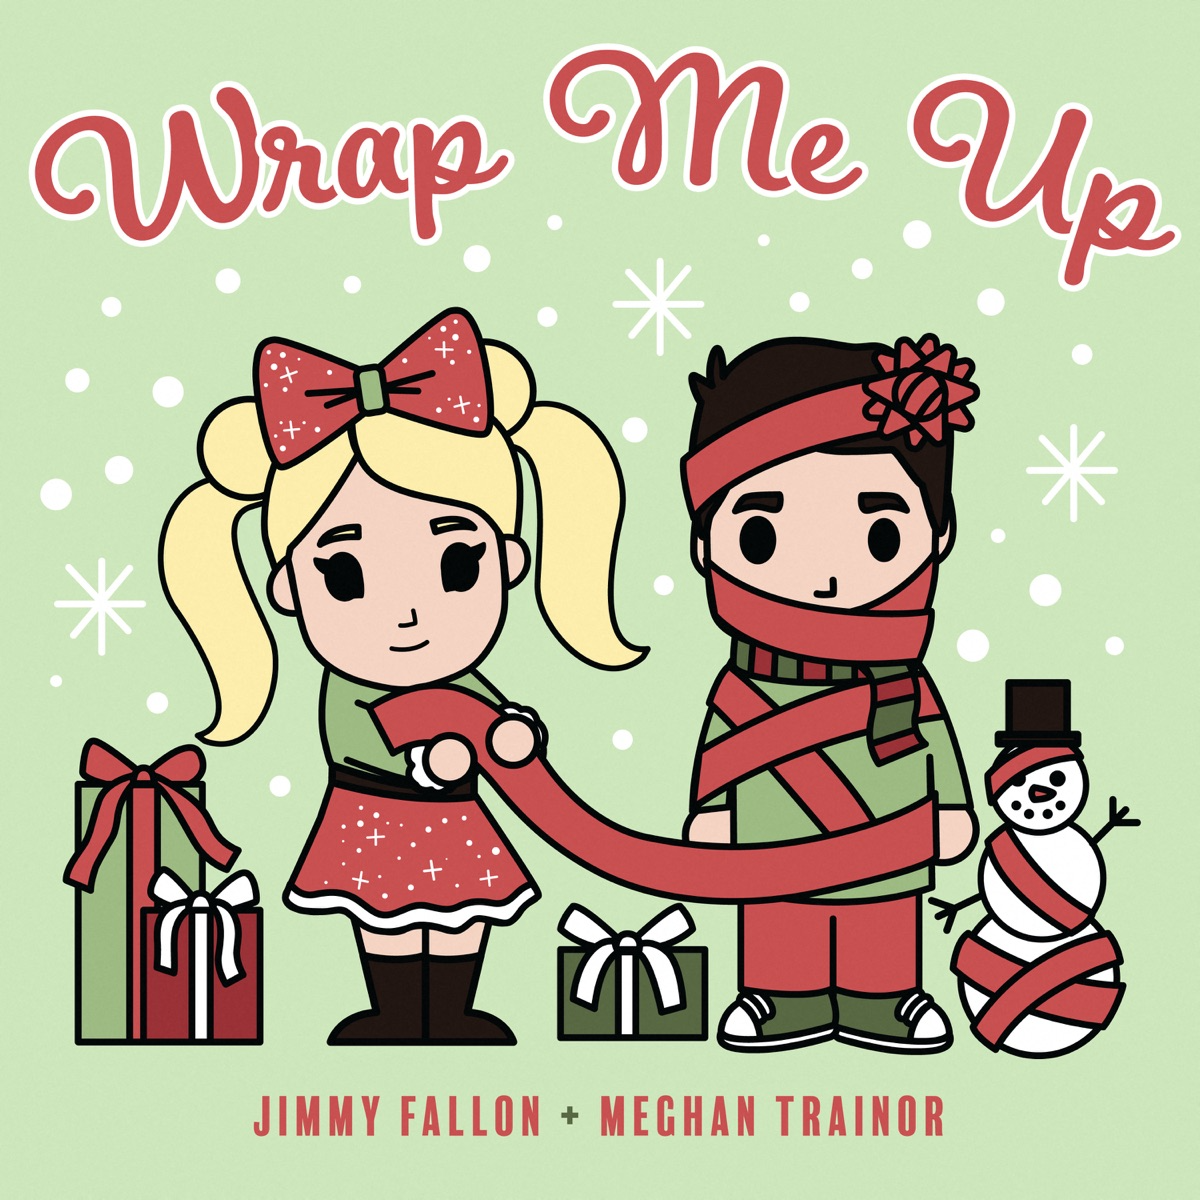 Jimmy Fallon Wrap Me Up Mp3 Download